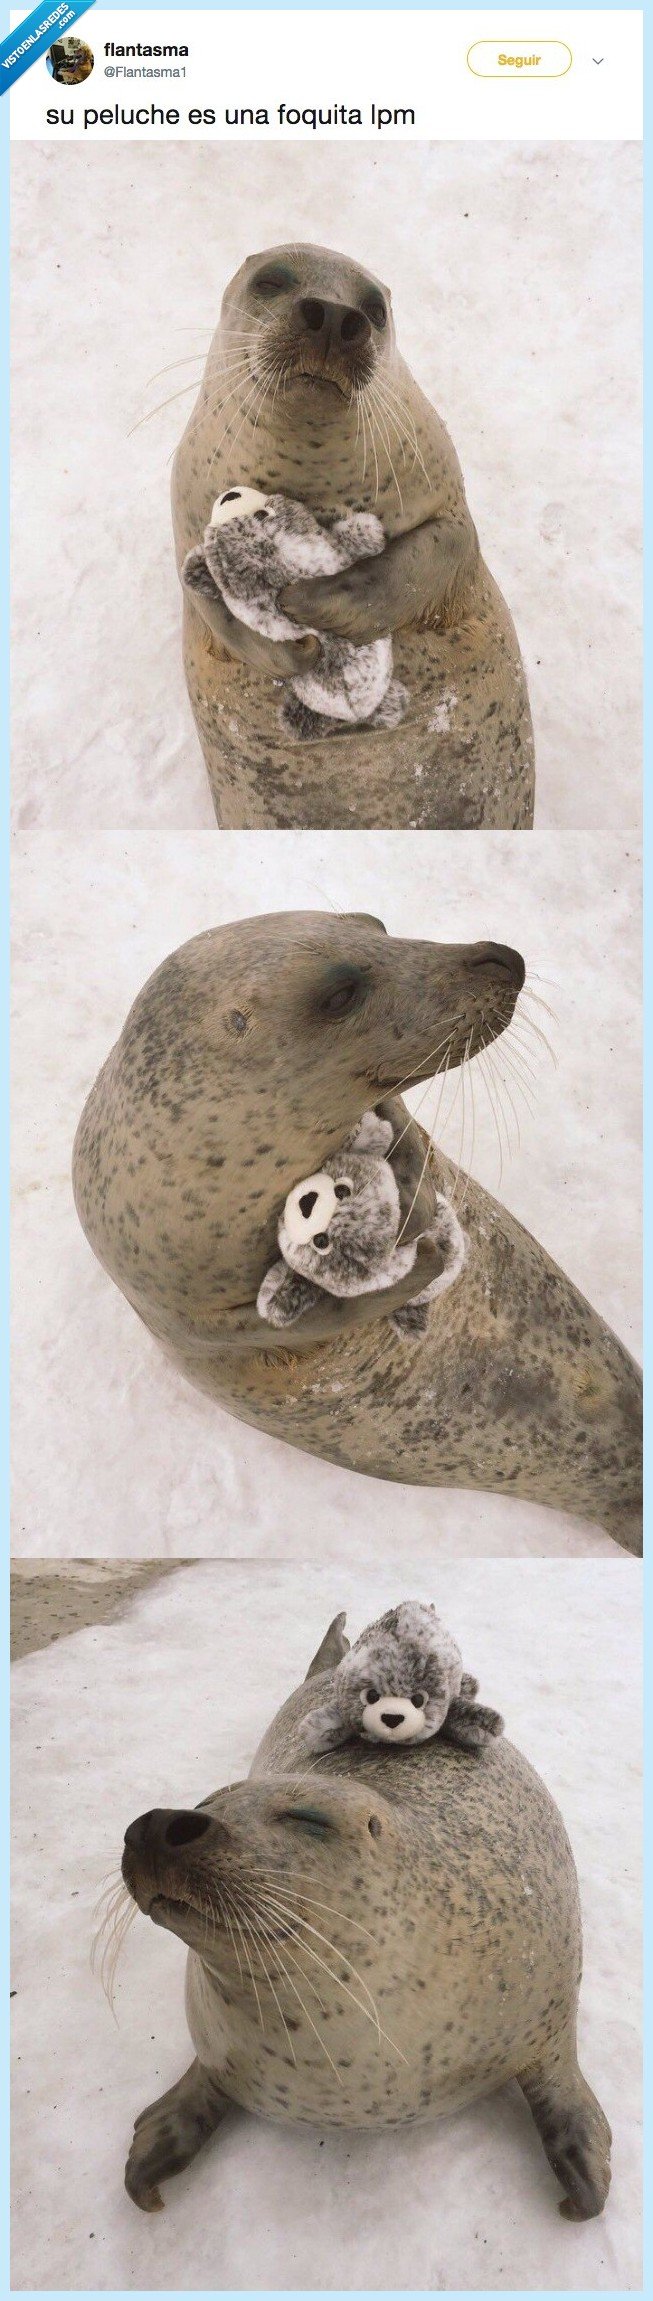 foca,bebé foca,peluche